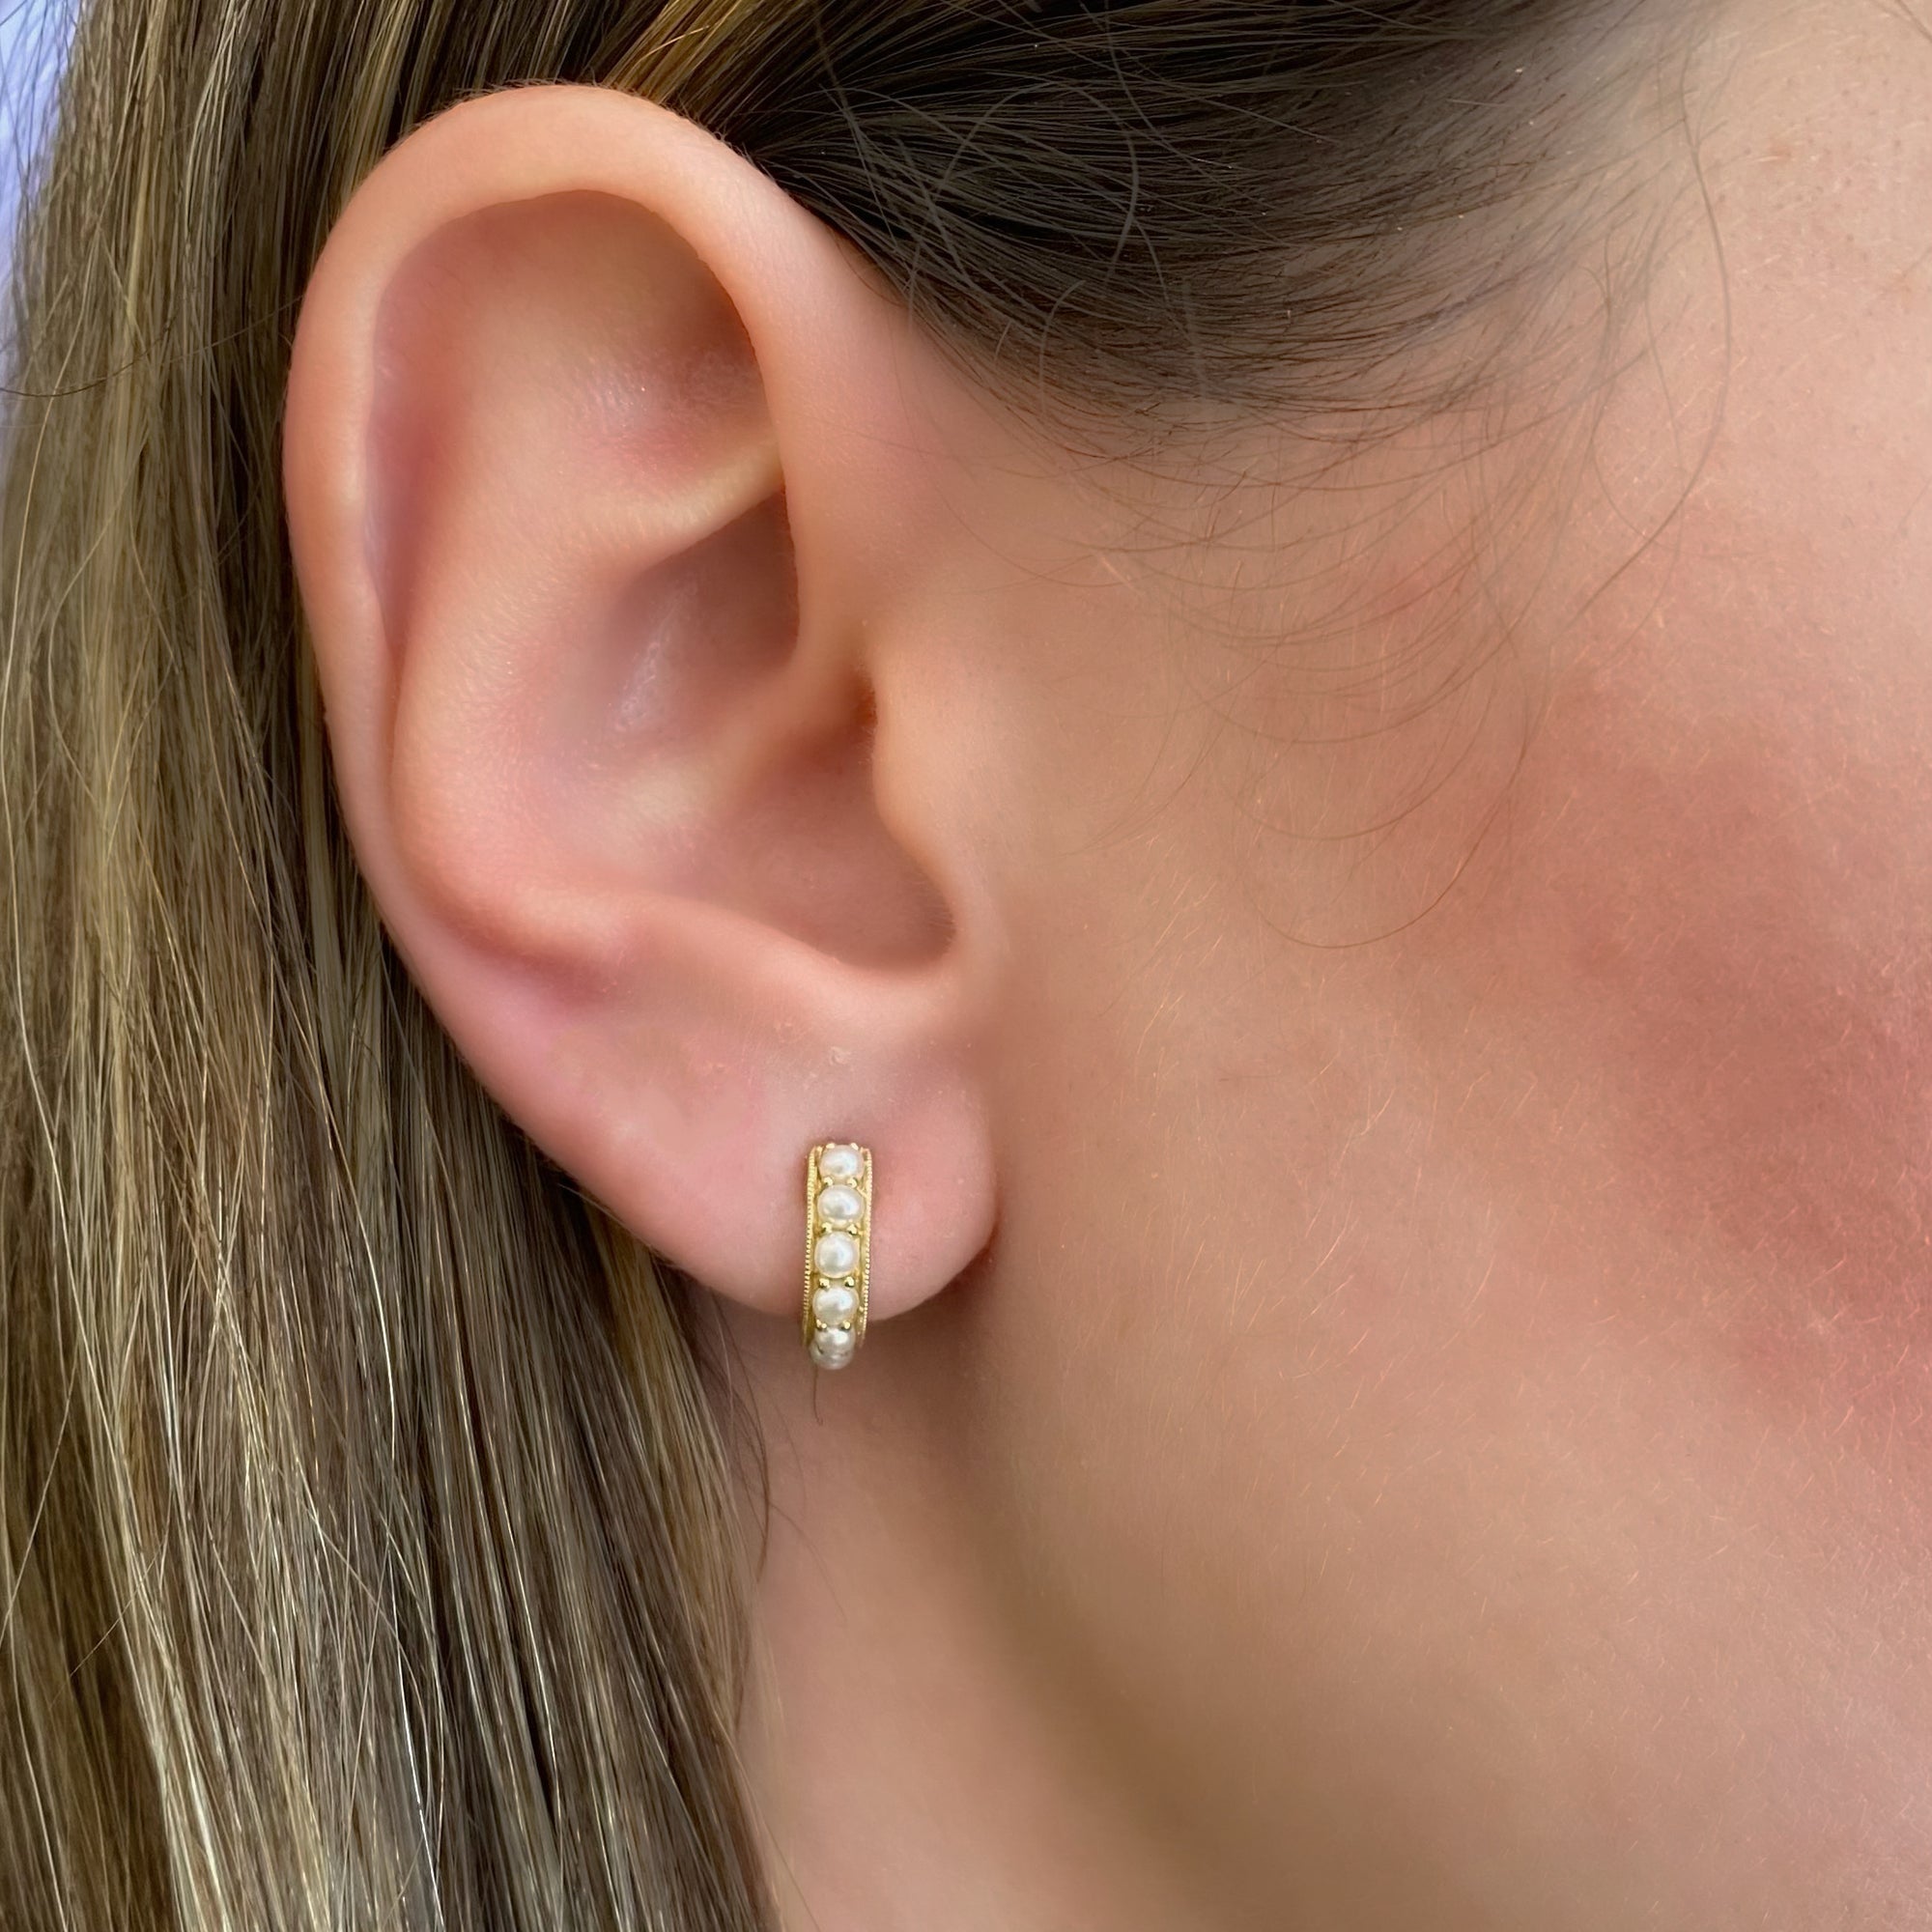 Pearl huggie earrings - 14K gold weighing 3.30 grams  - 12 pearls